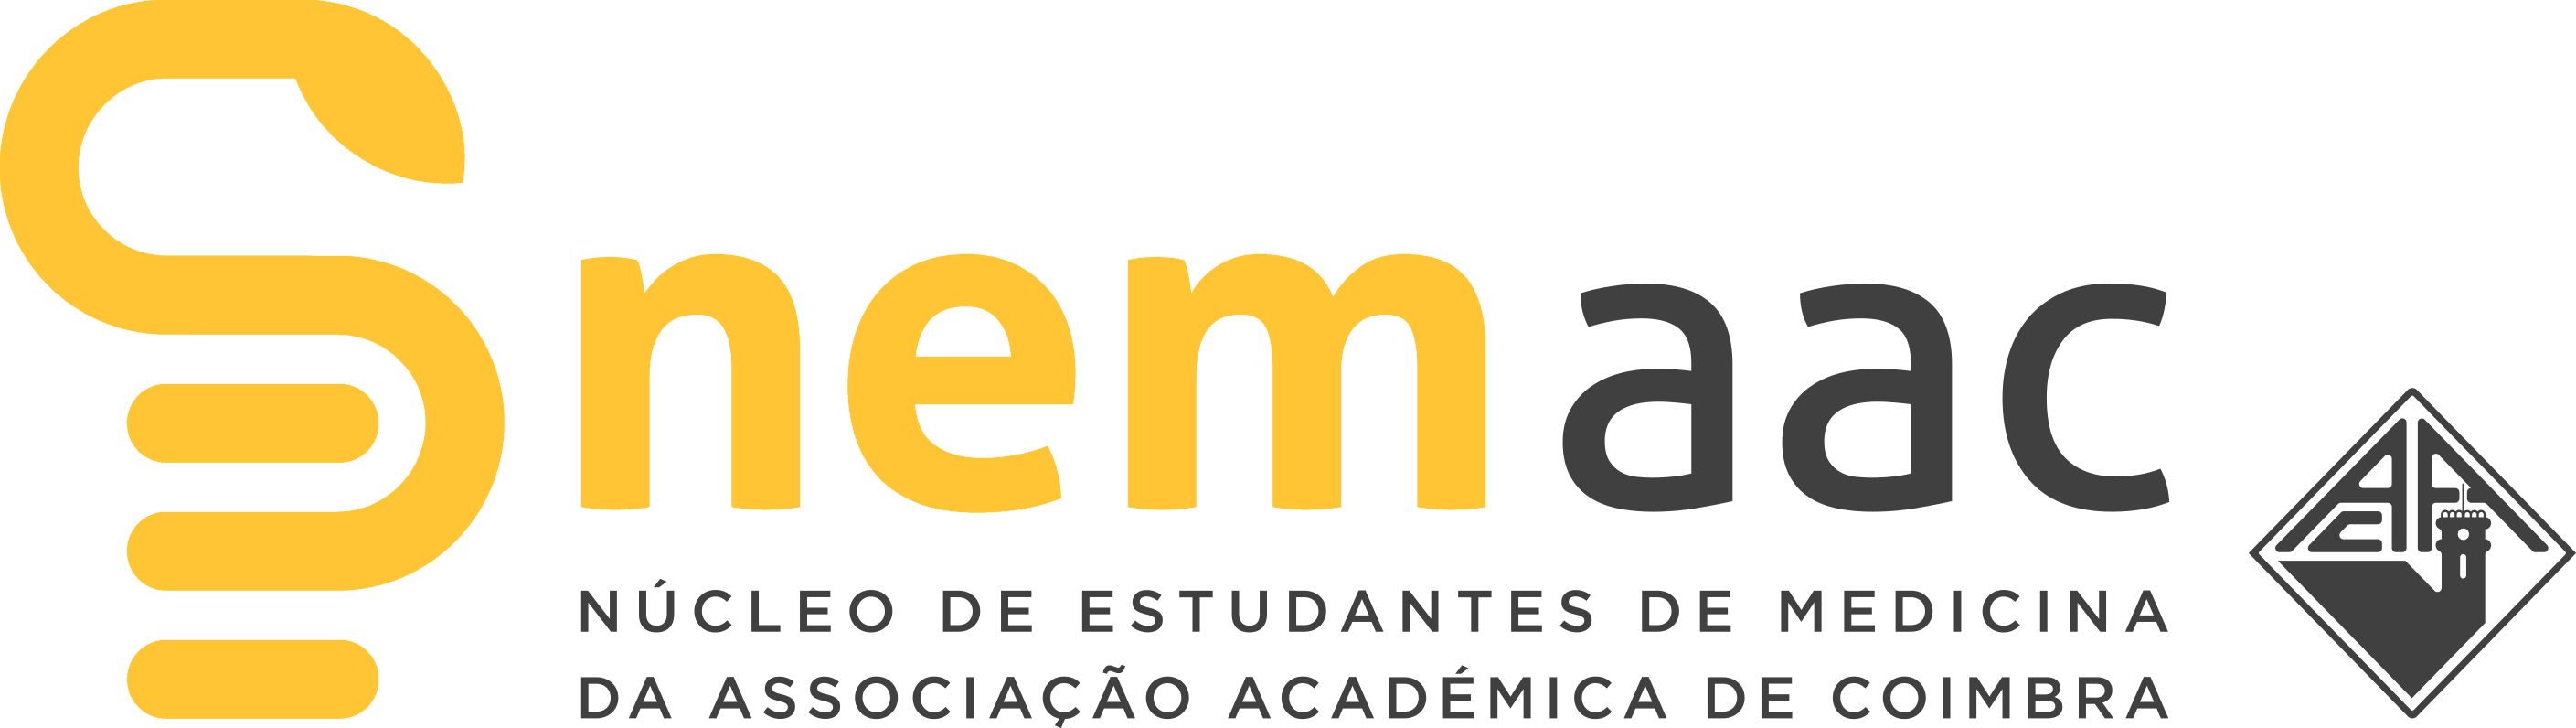 Núcleo de Estudantes de Medicina da Associação Académica de Coimbra